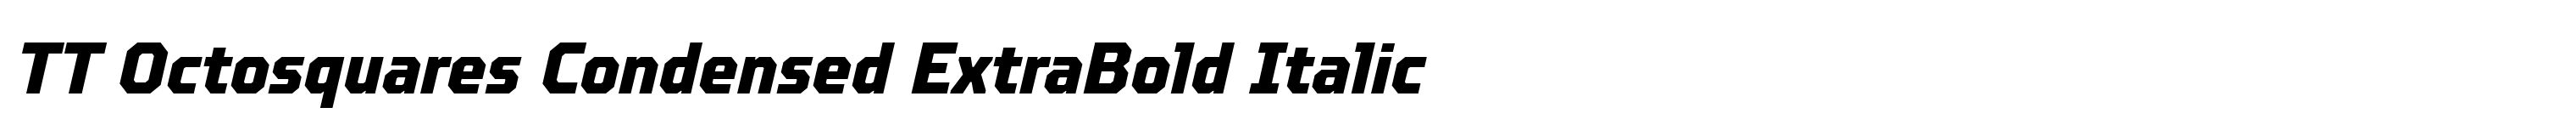 TT Octosquares Condensed ExtraBold Italic